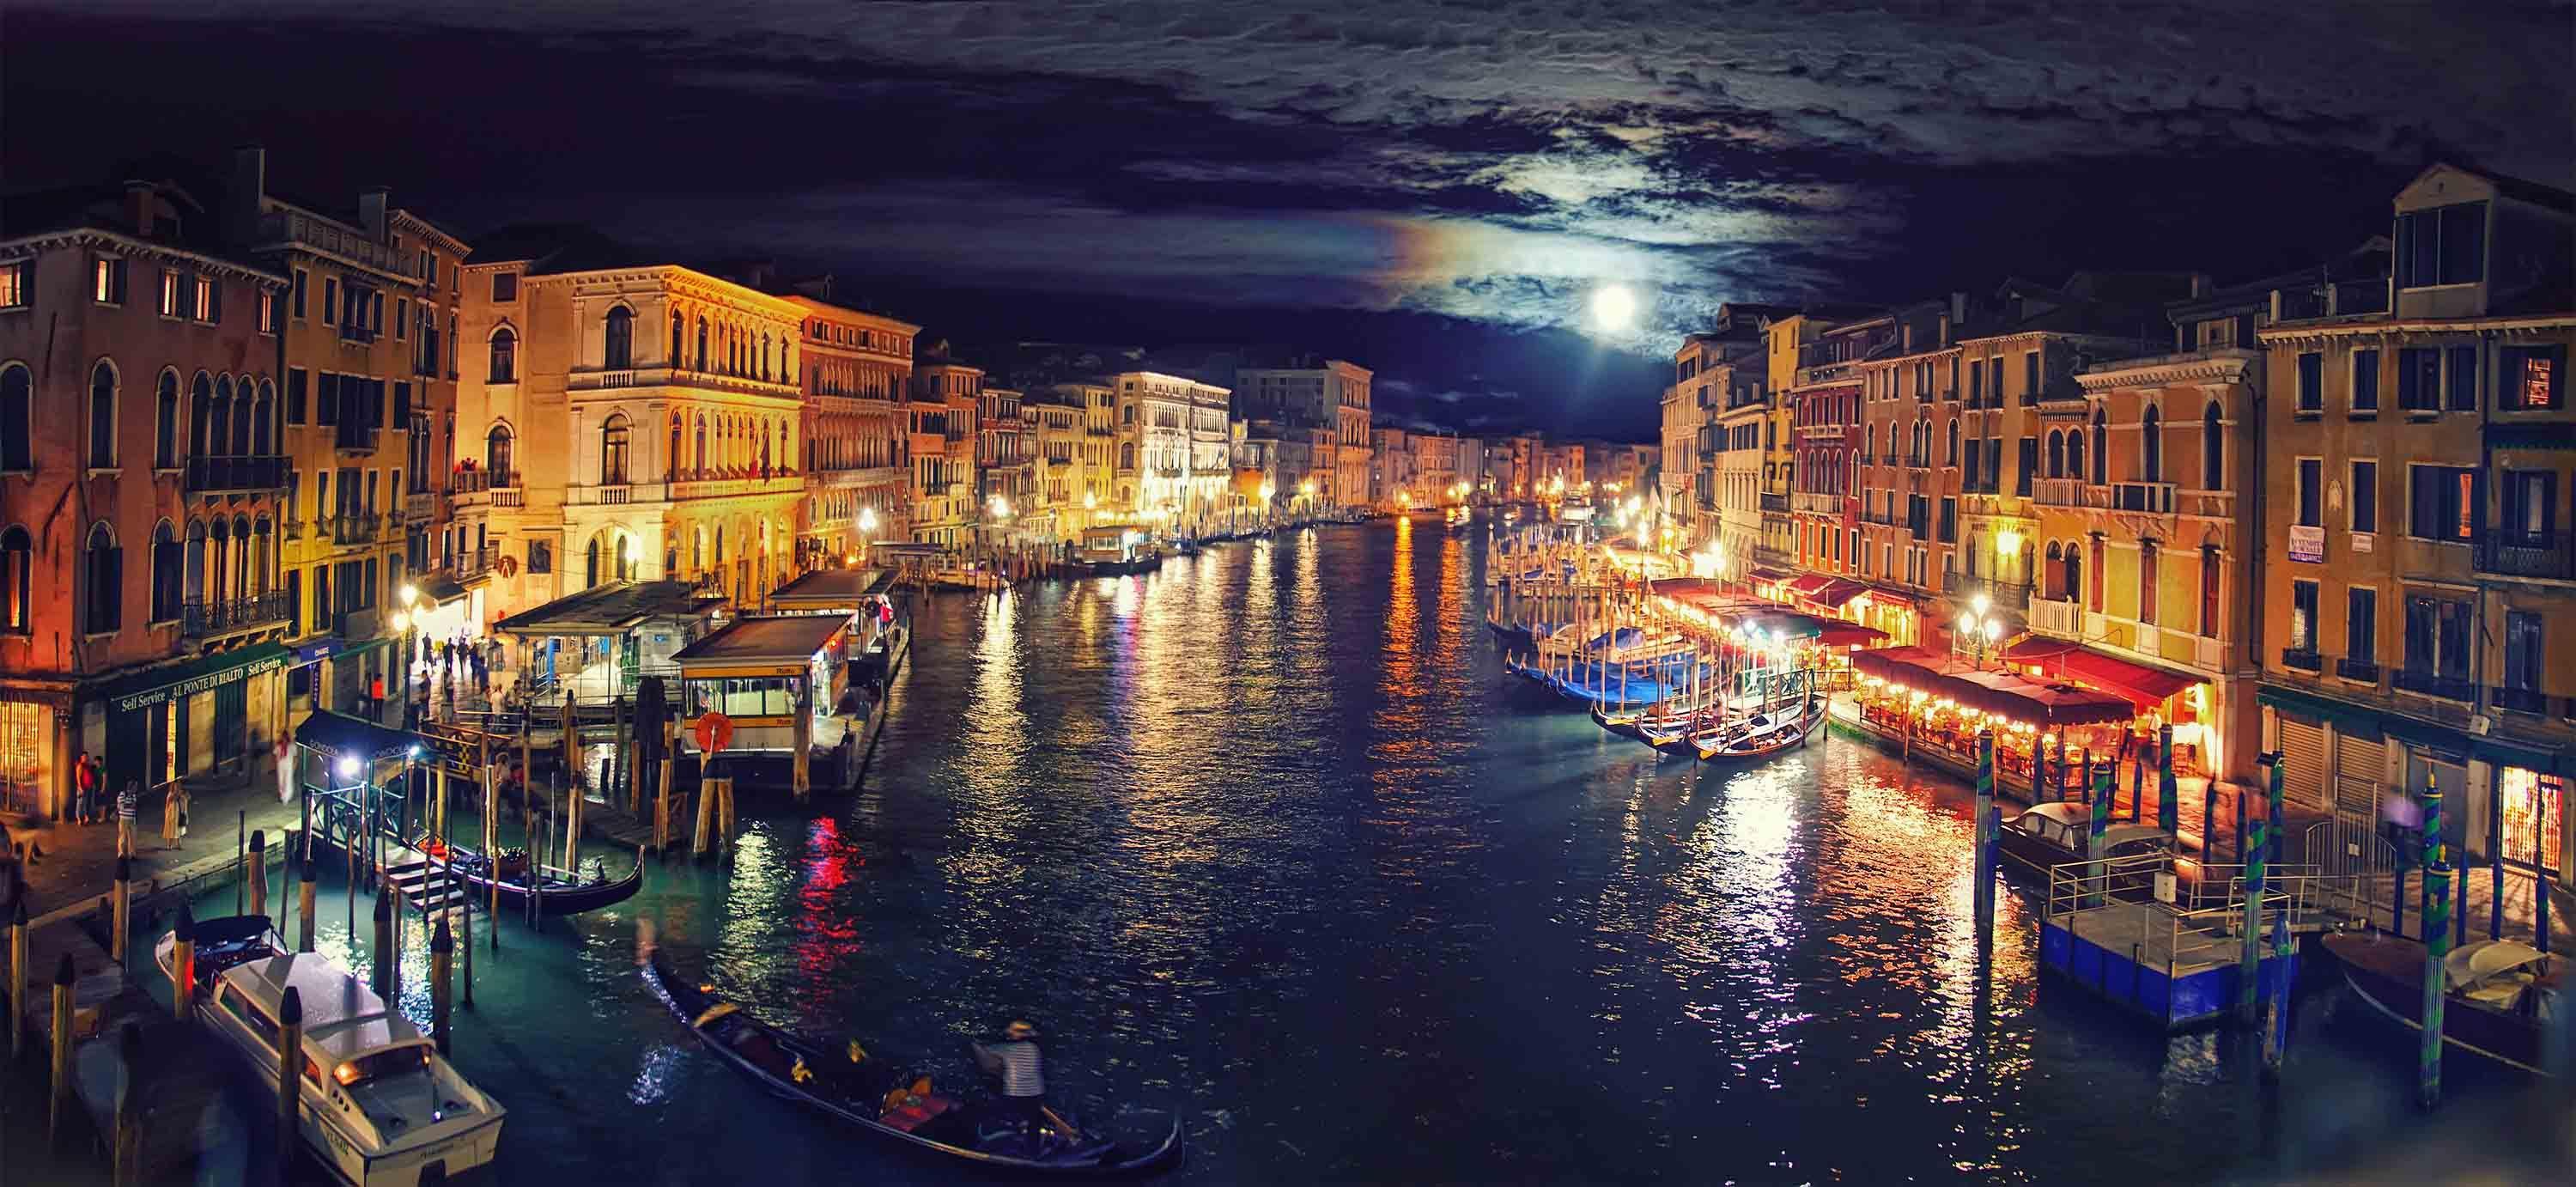 Resultado de imagen para venecia. Culture and travel